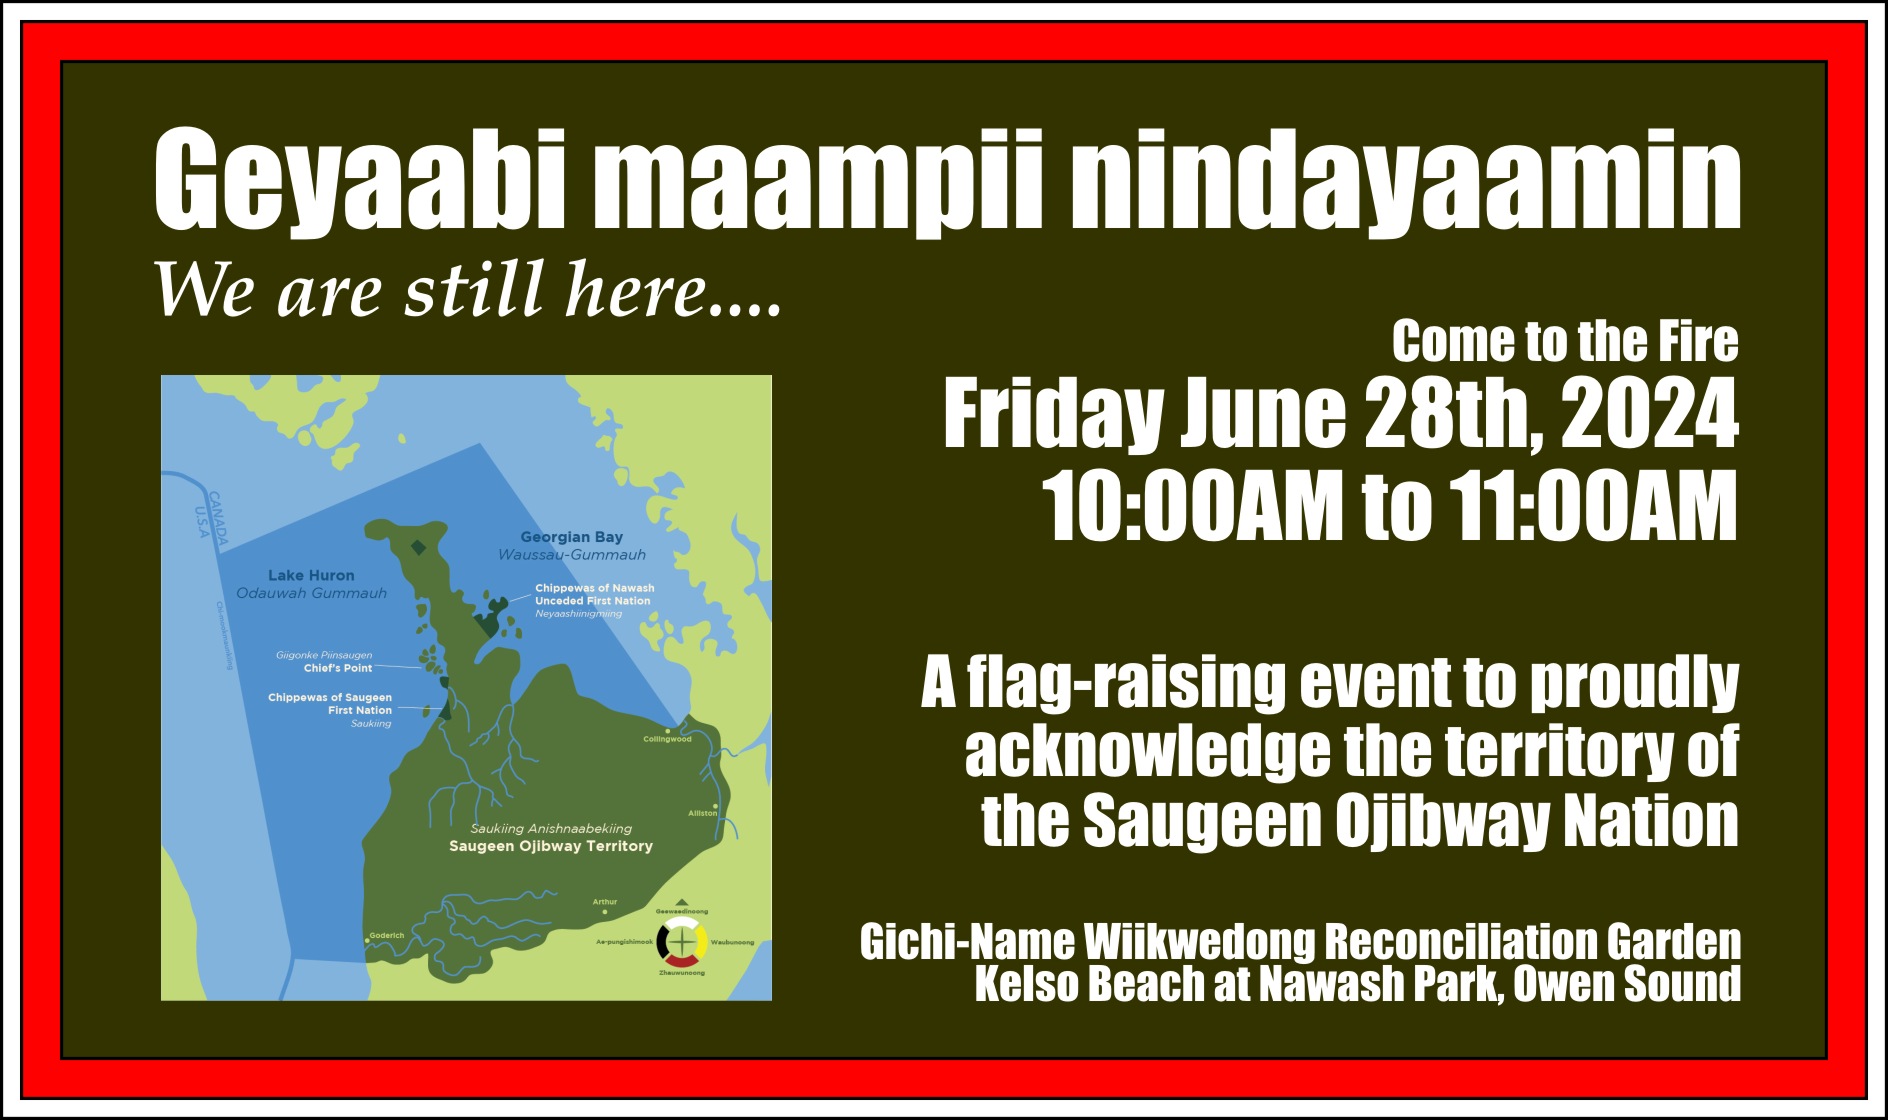 June 28th invite to flag-raising event